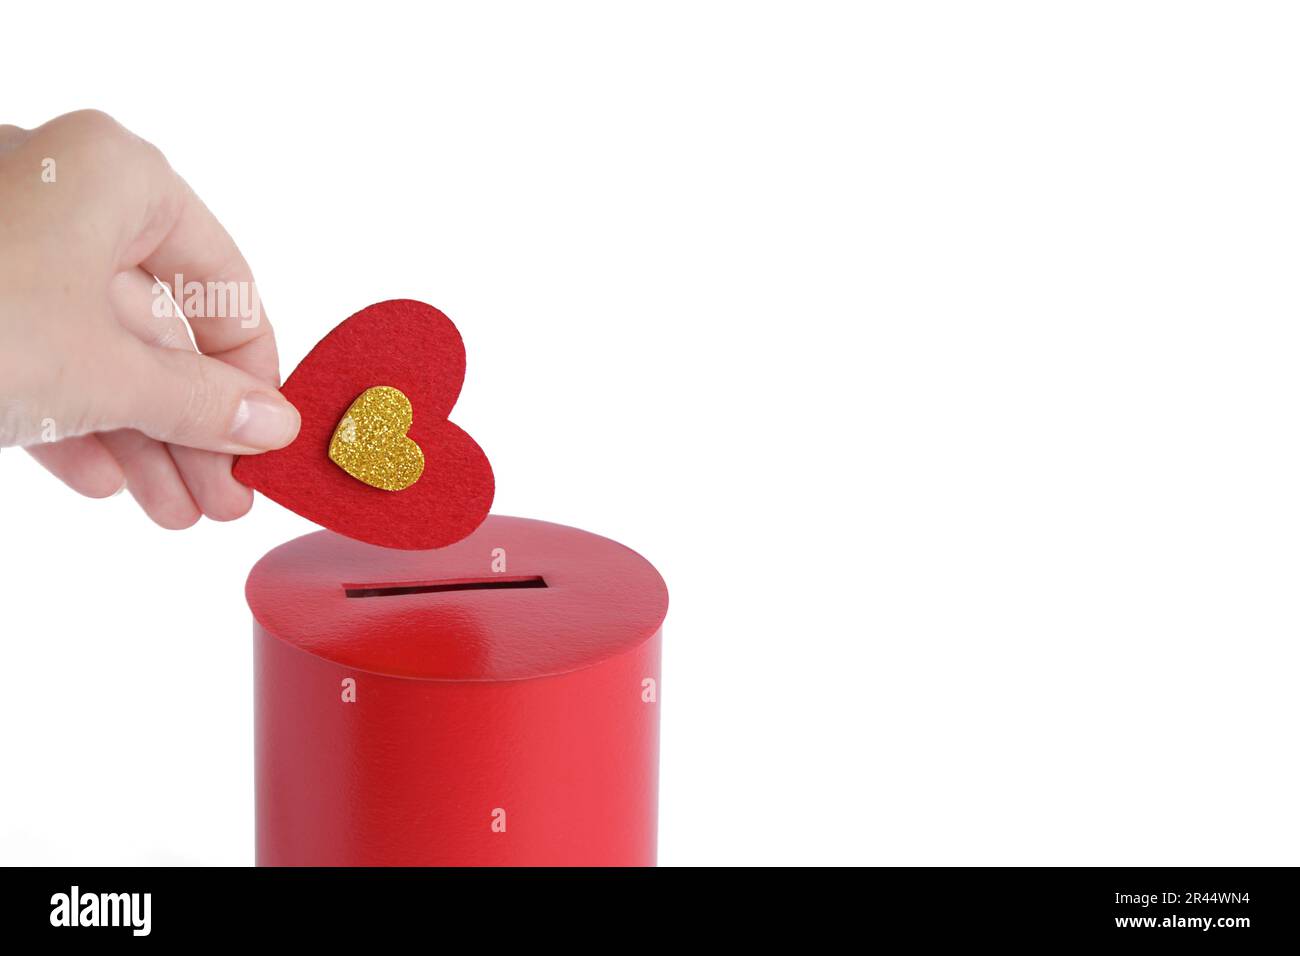 Die Hand steckt Red Heart in die rote Spendenbox. Konzept der aufrichtigen Hingabe zum Glauben. Konzept der Spende, Lebensrettung oder Wohltätigkeit. Nahaufnahme Stockfoto